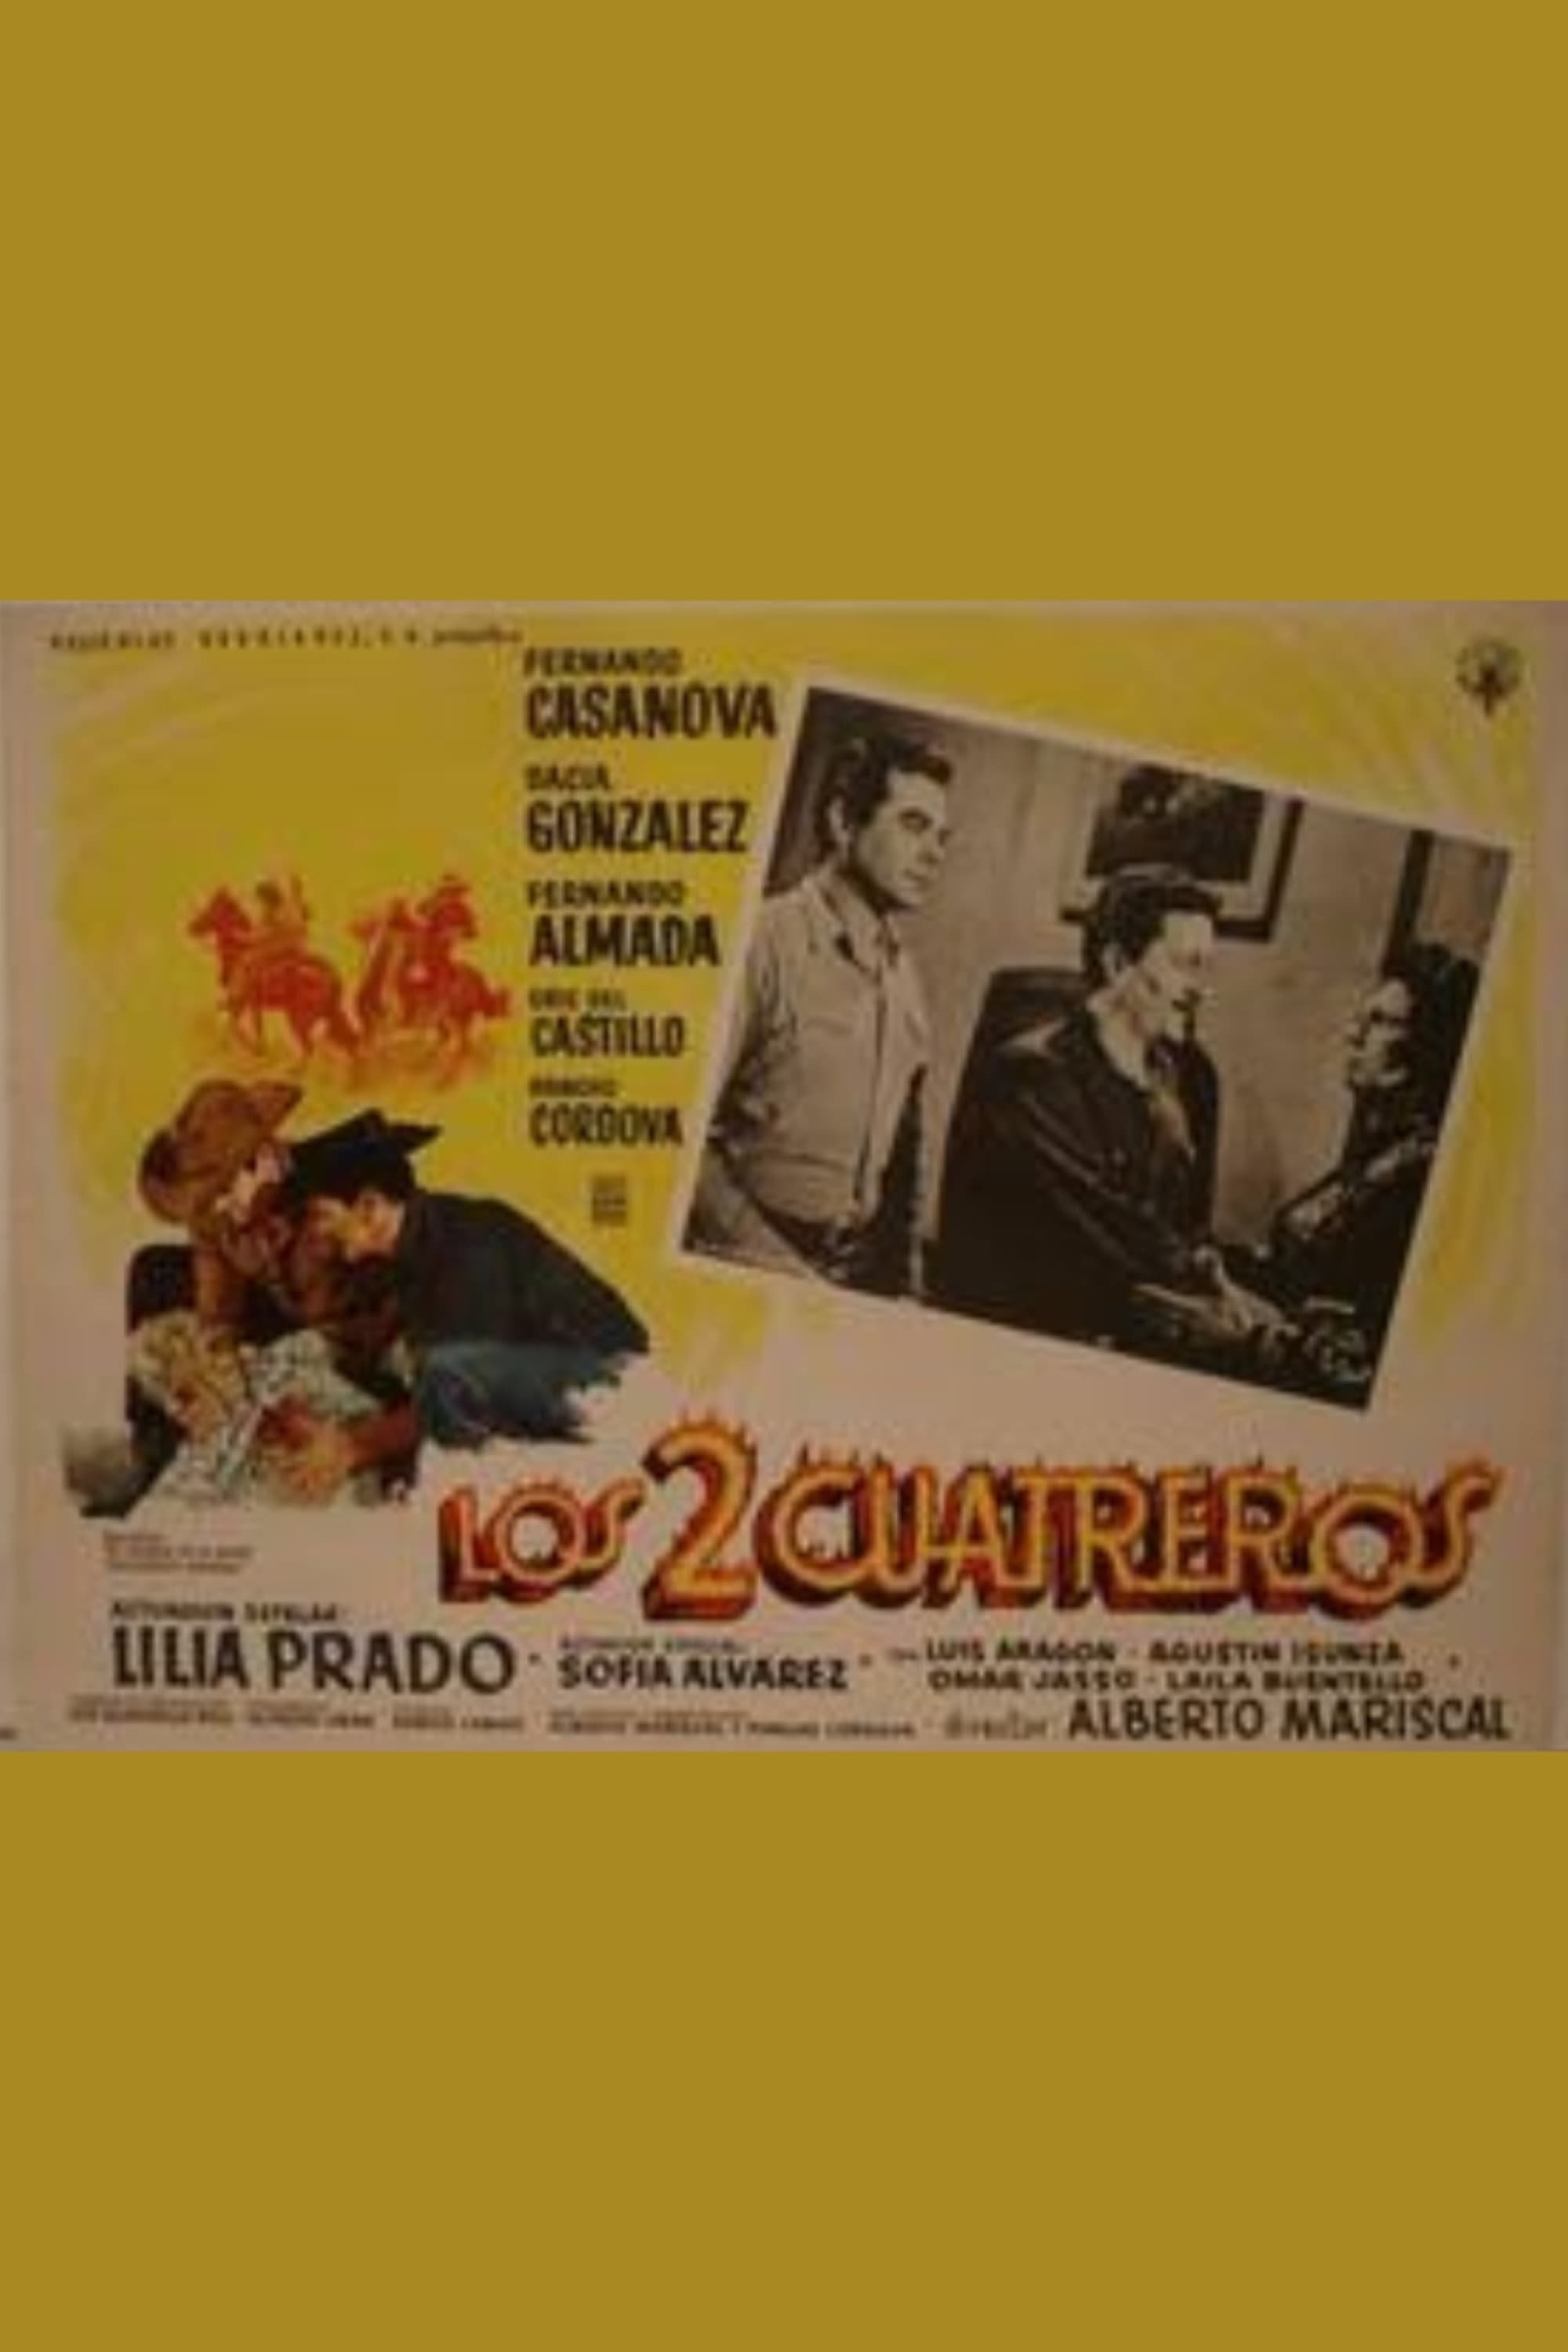 Los dos cuatreros (1965)